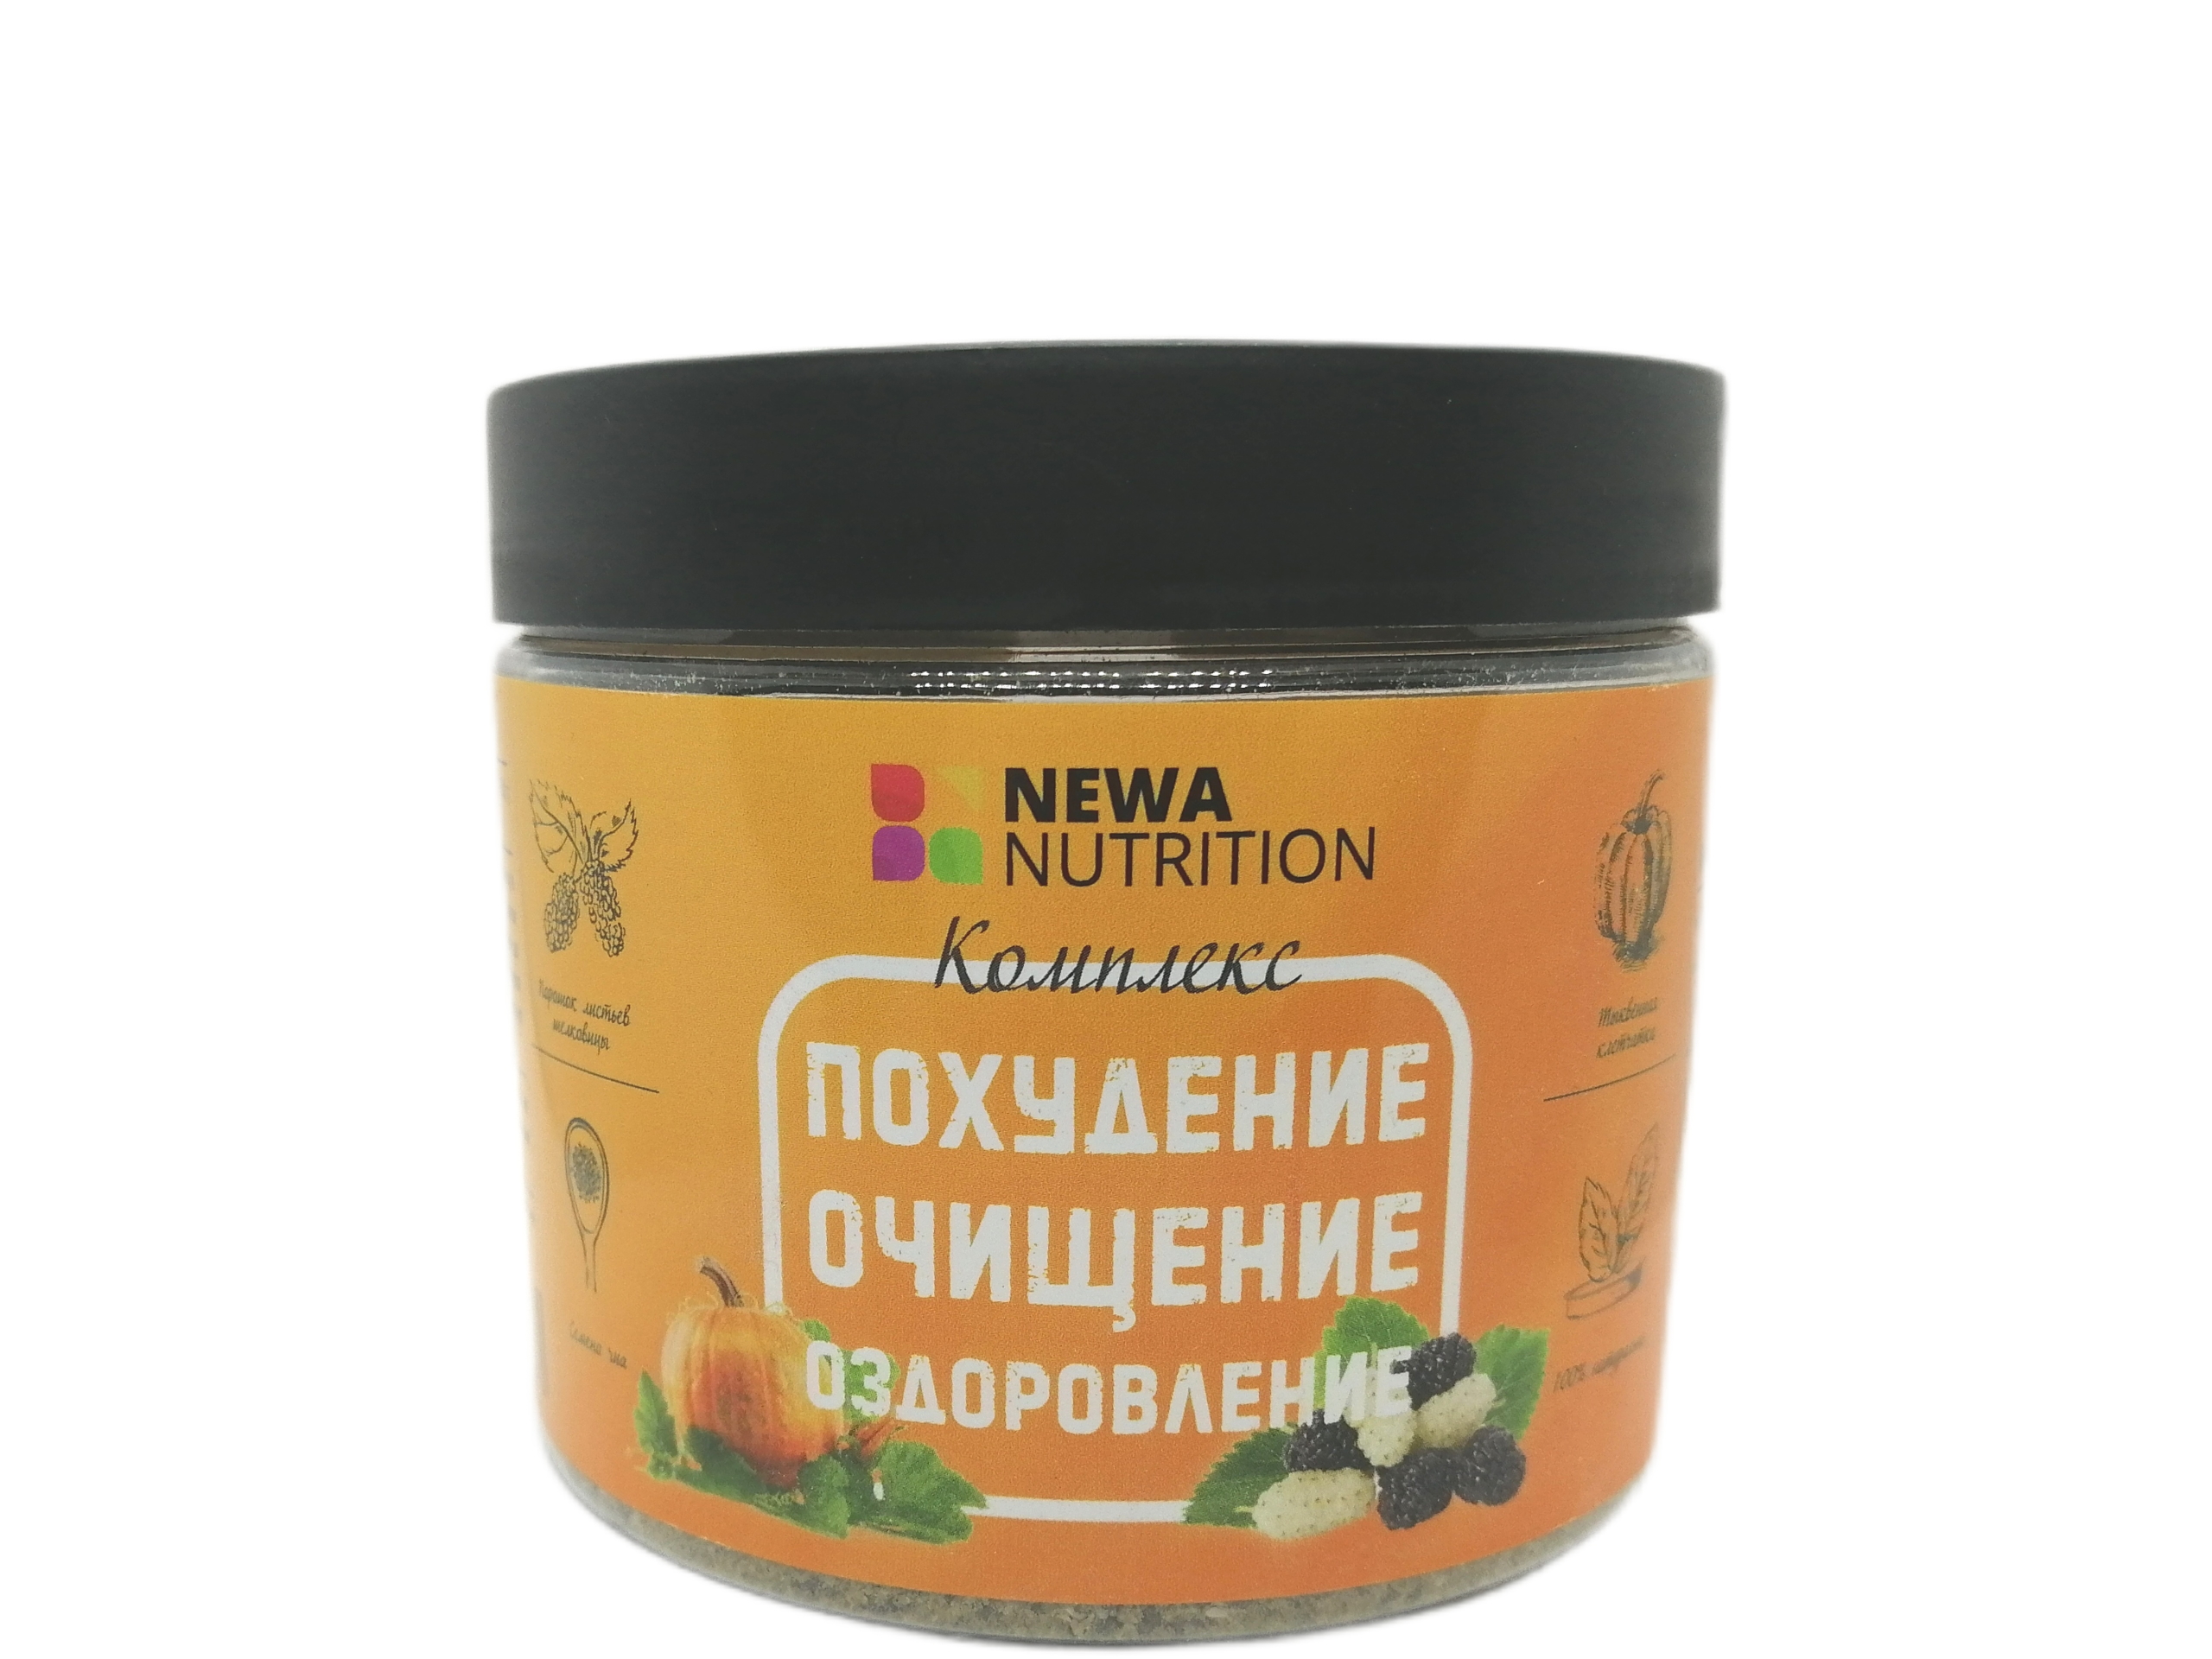 Комплекс Newa Nutrition похудение, очищение, оздоровление, 180г